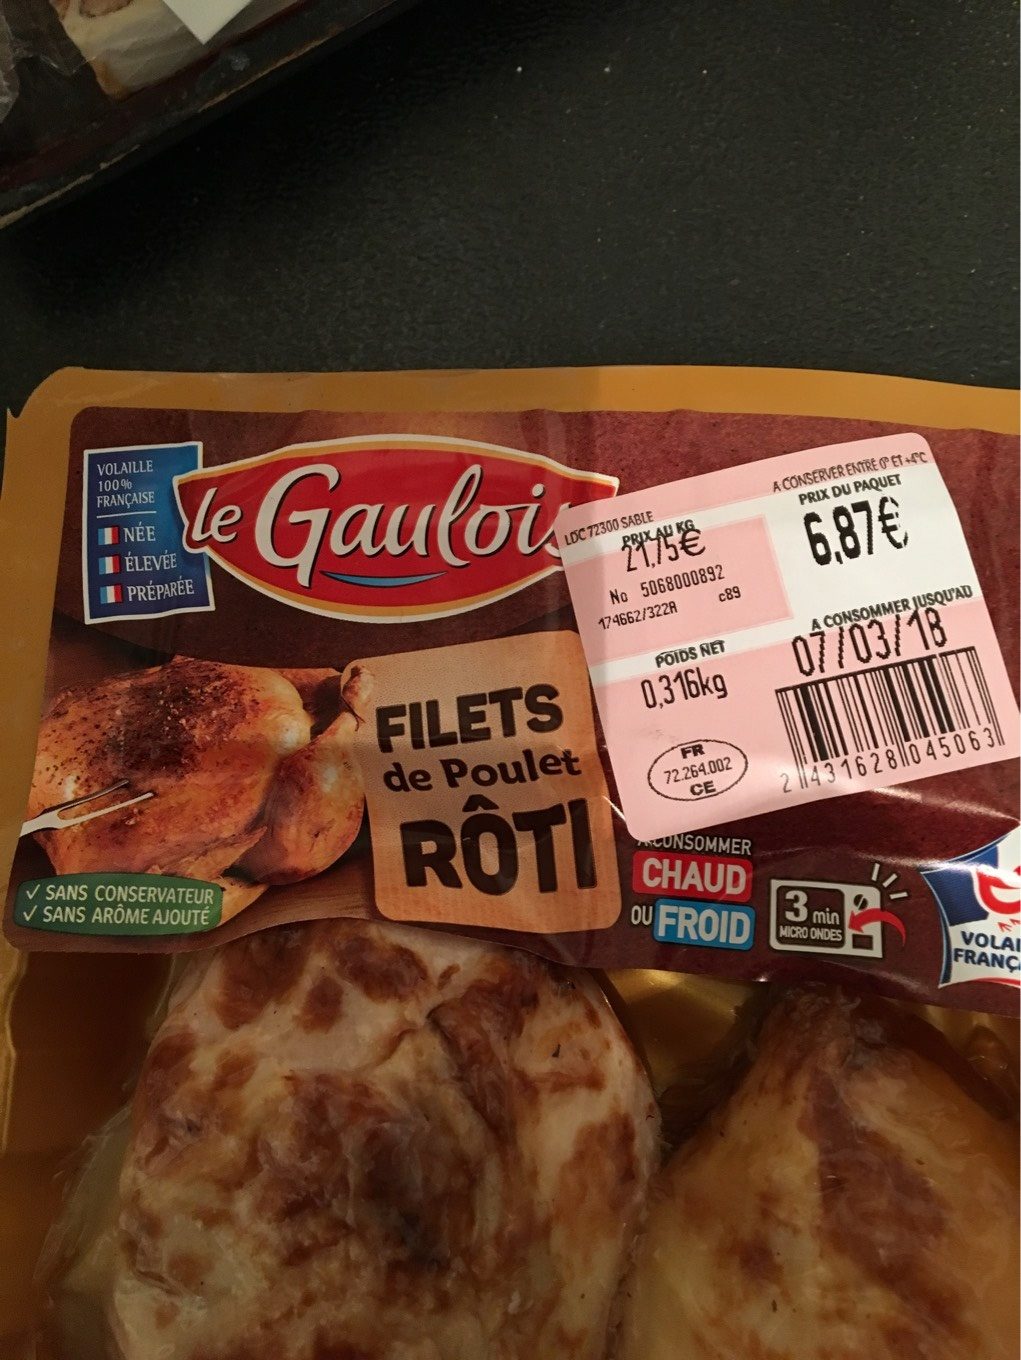 Filets poulet roti - Product - fr